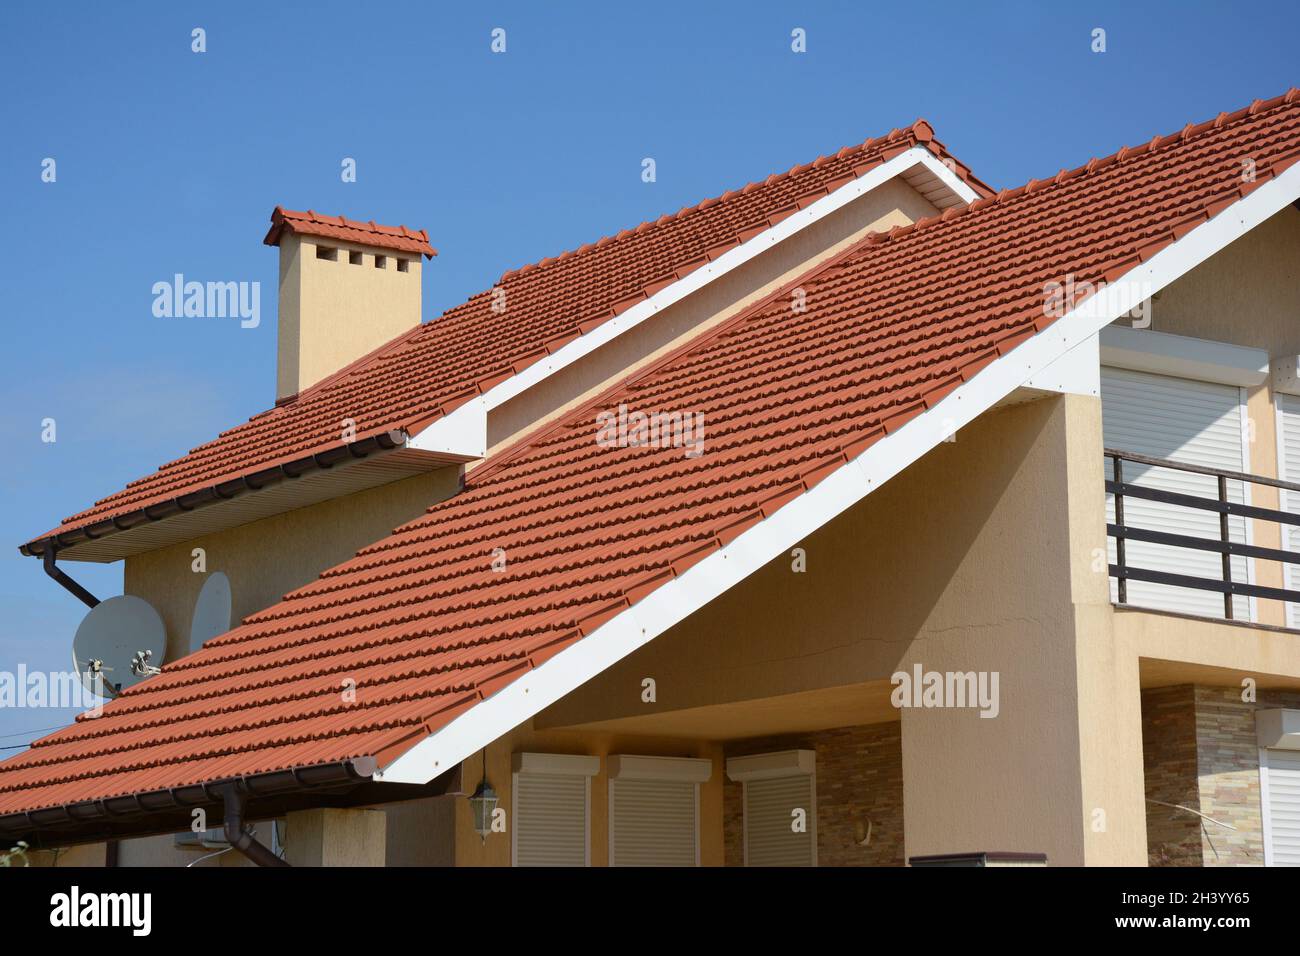 Haus mit Lehmziegeldach, Regenrinne, Kamin, Giebel und Tal Art der Dachkonstruktion. Gebäude Dachgeschosshausbau mit Dachziegeln und dif Stockfoto